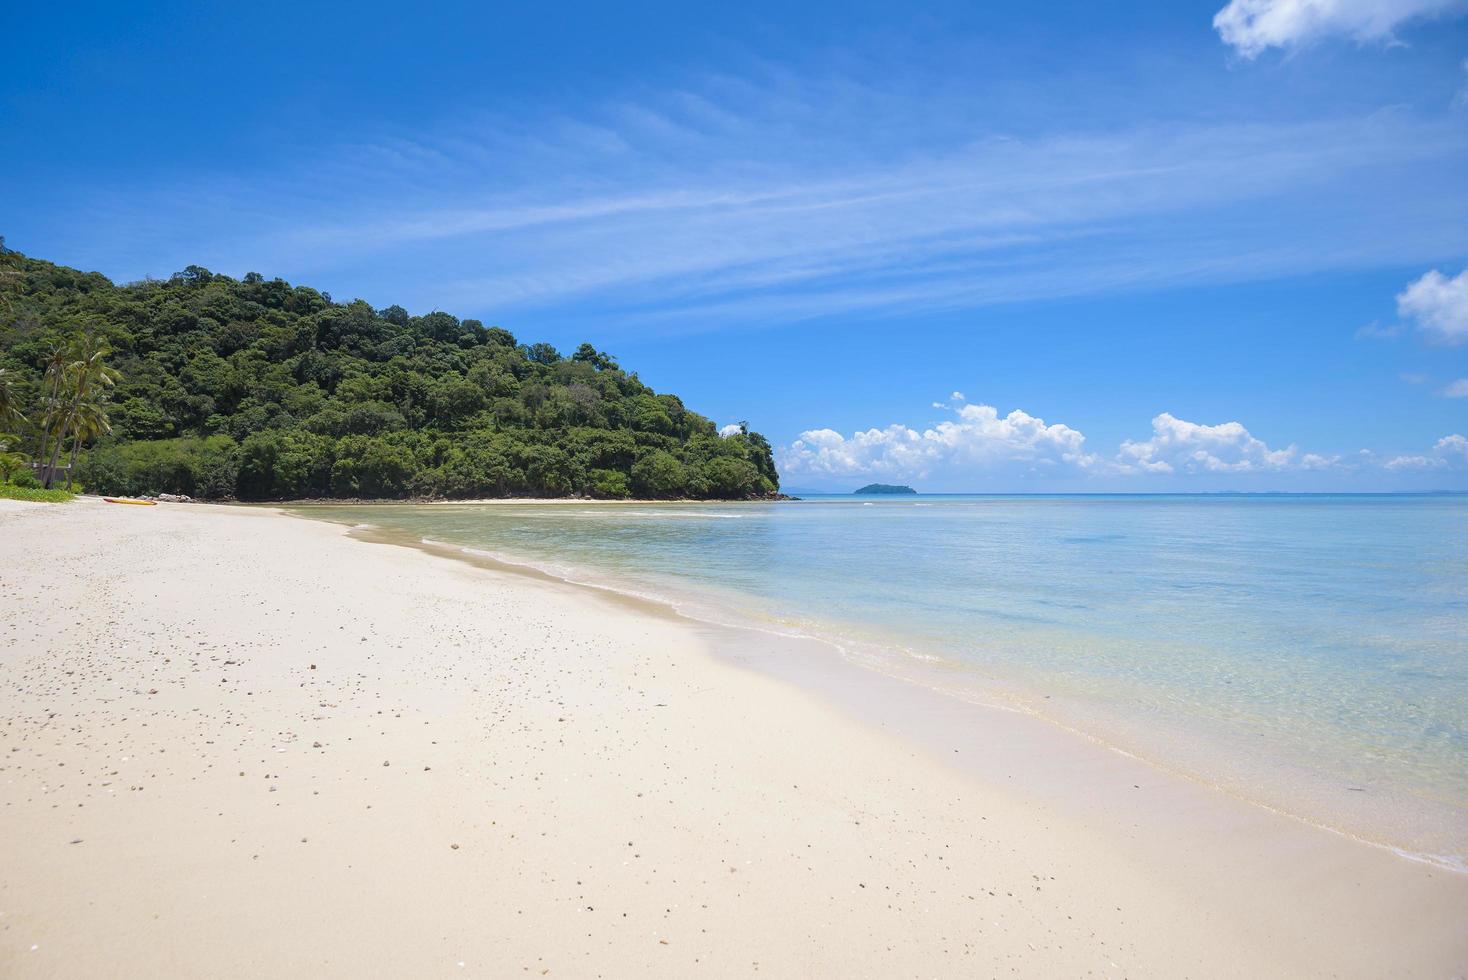 hermosa vista del paisaje de la playa tropical, mar esmeralda y arena blanca contra el cielo azul, bahía maya en la isla phi phi, tailandia foto